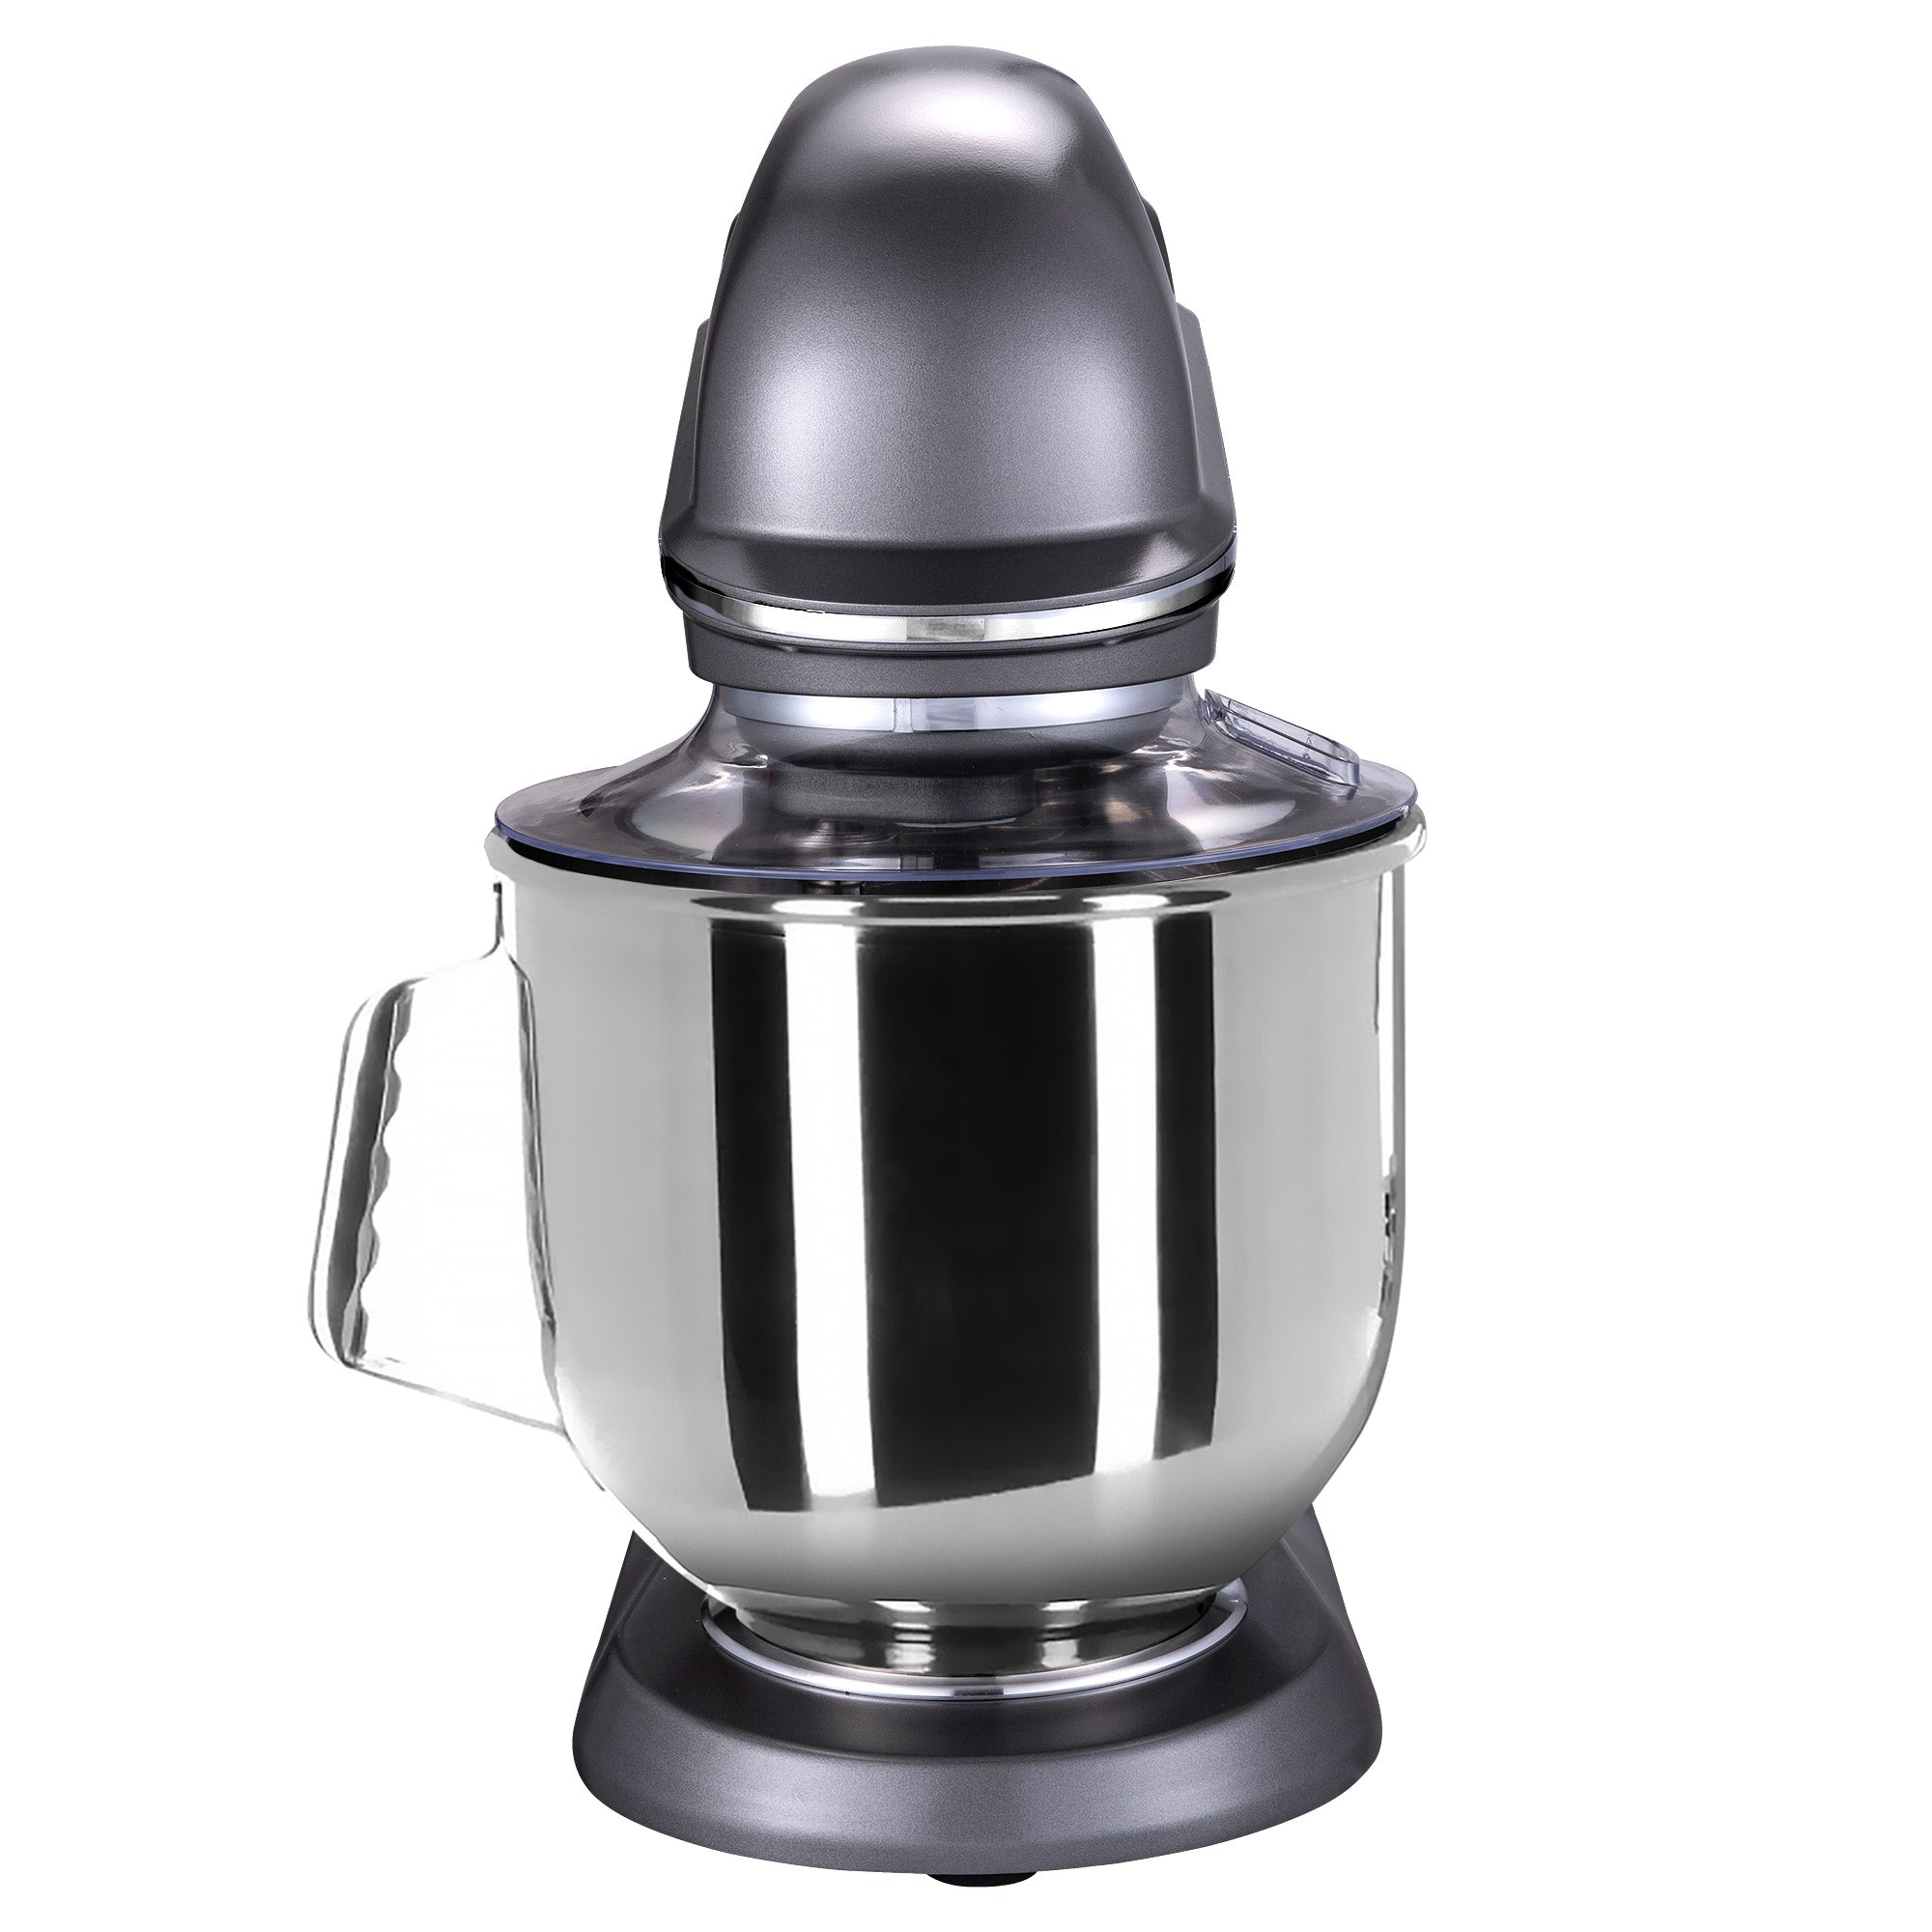 Mikser - kjøkkenmaskin - eltemaskin - 7 liter - grå